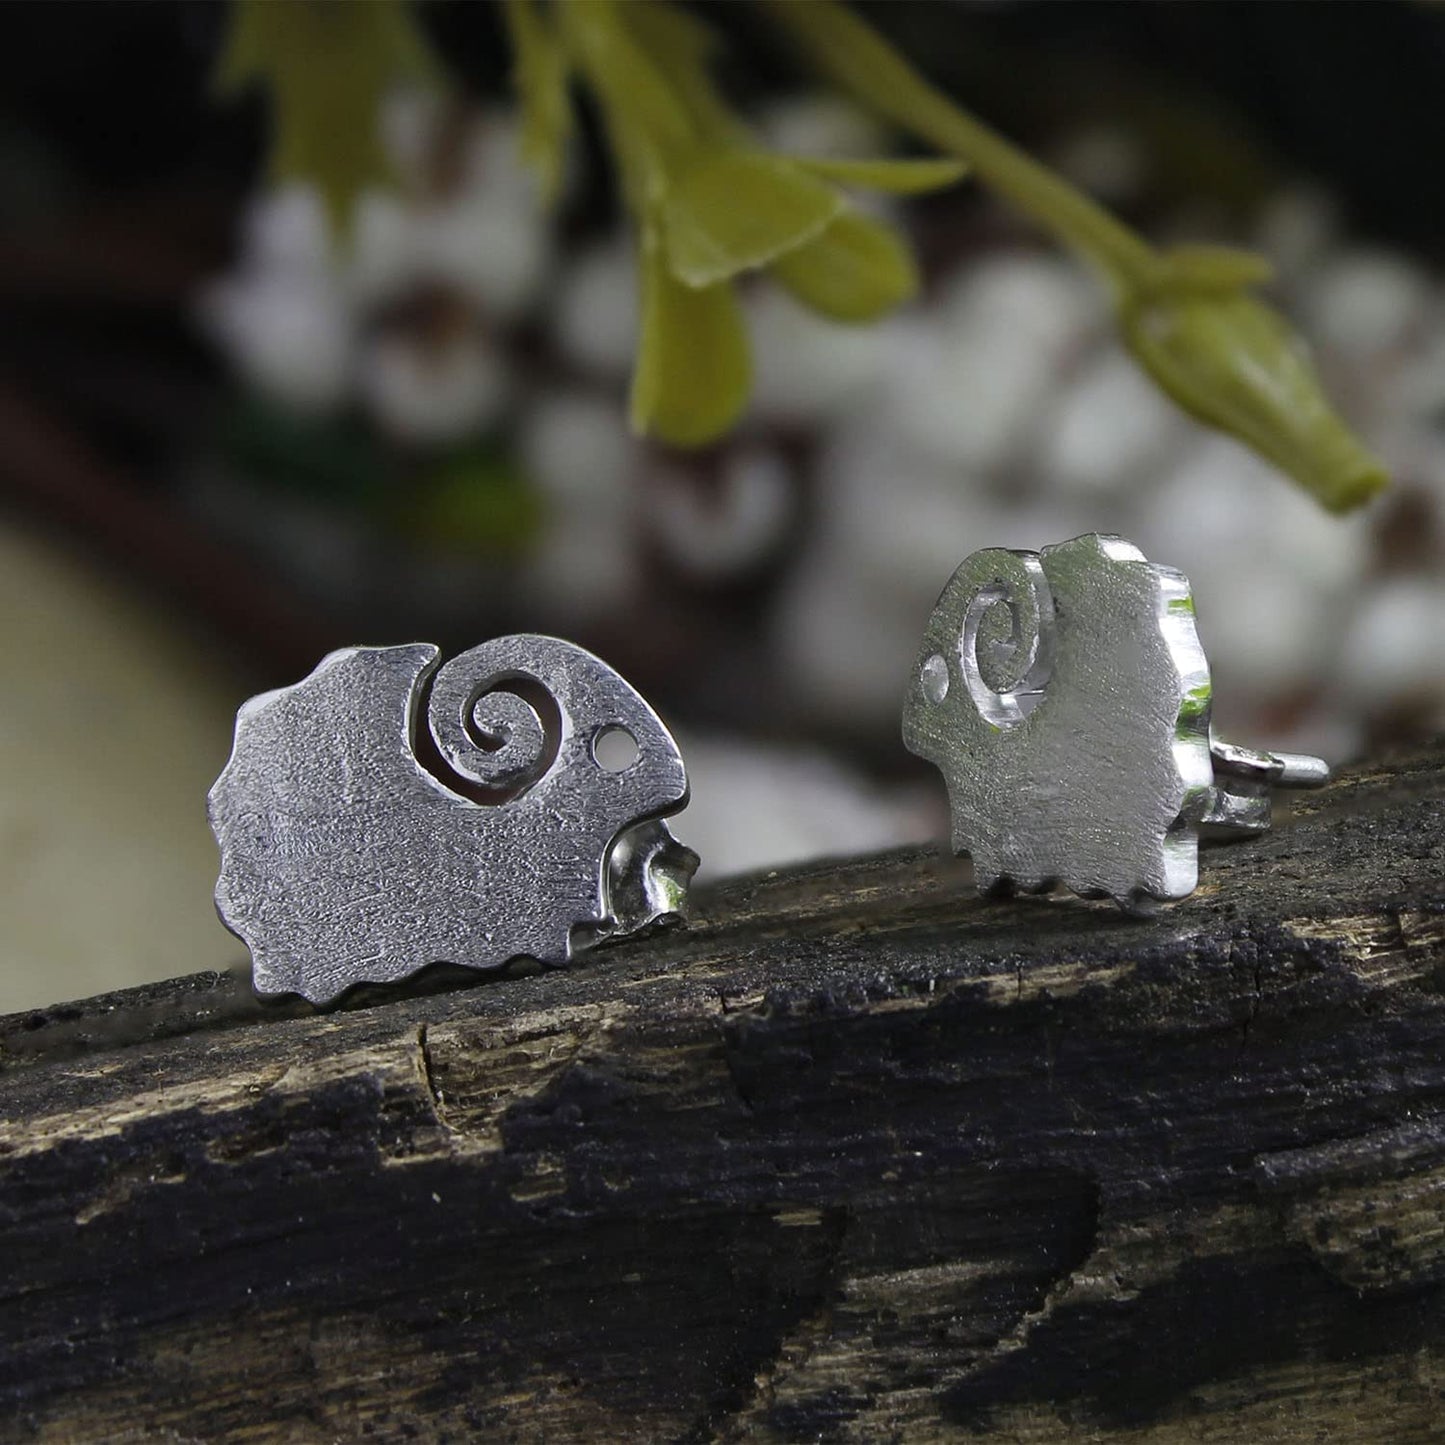 Sheep Stud Earrings Jewelry for Women in 925 Sterling Silver